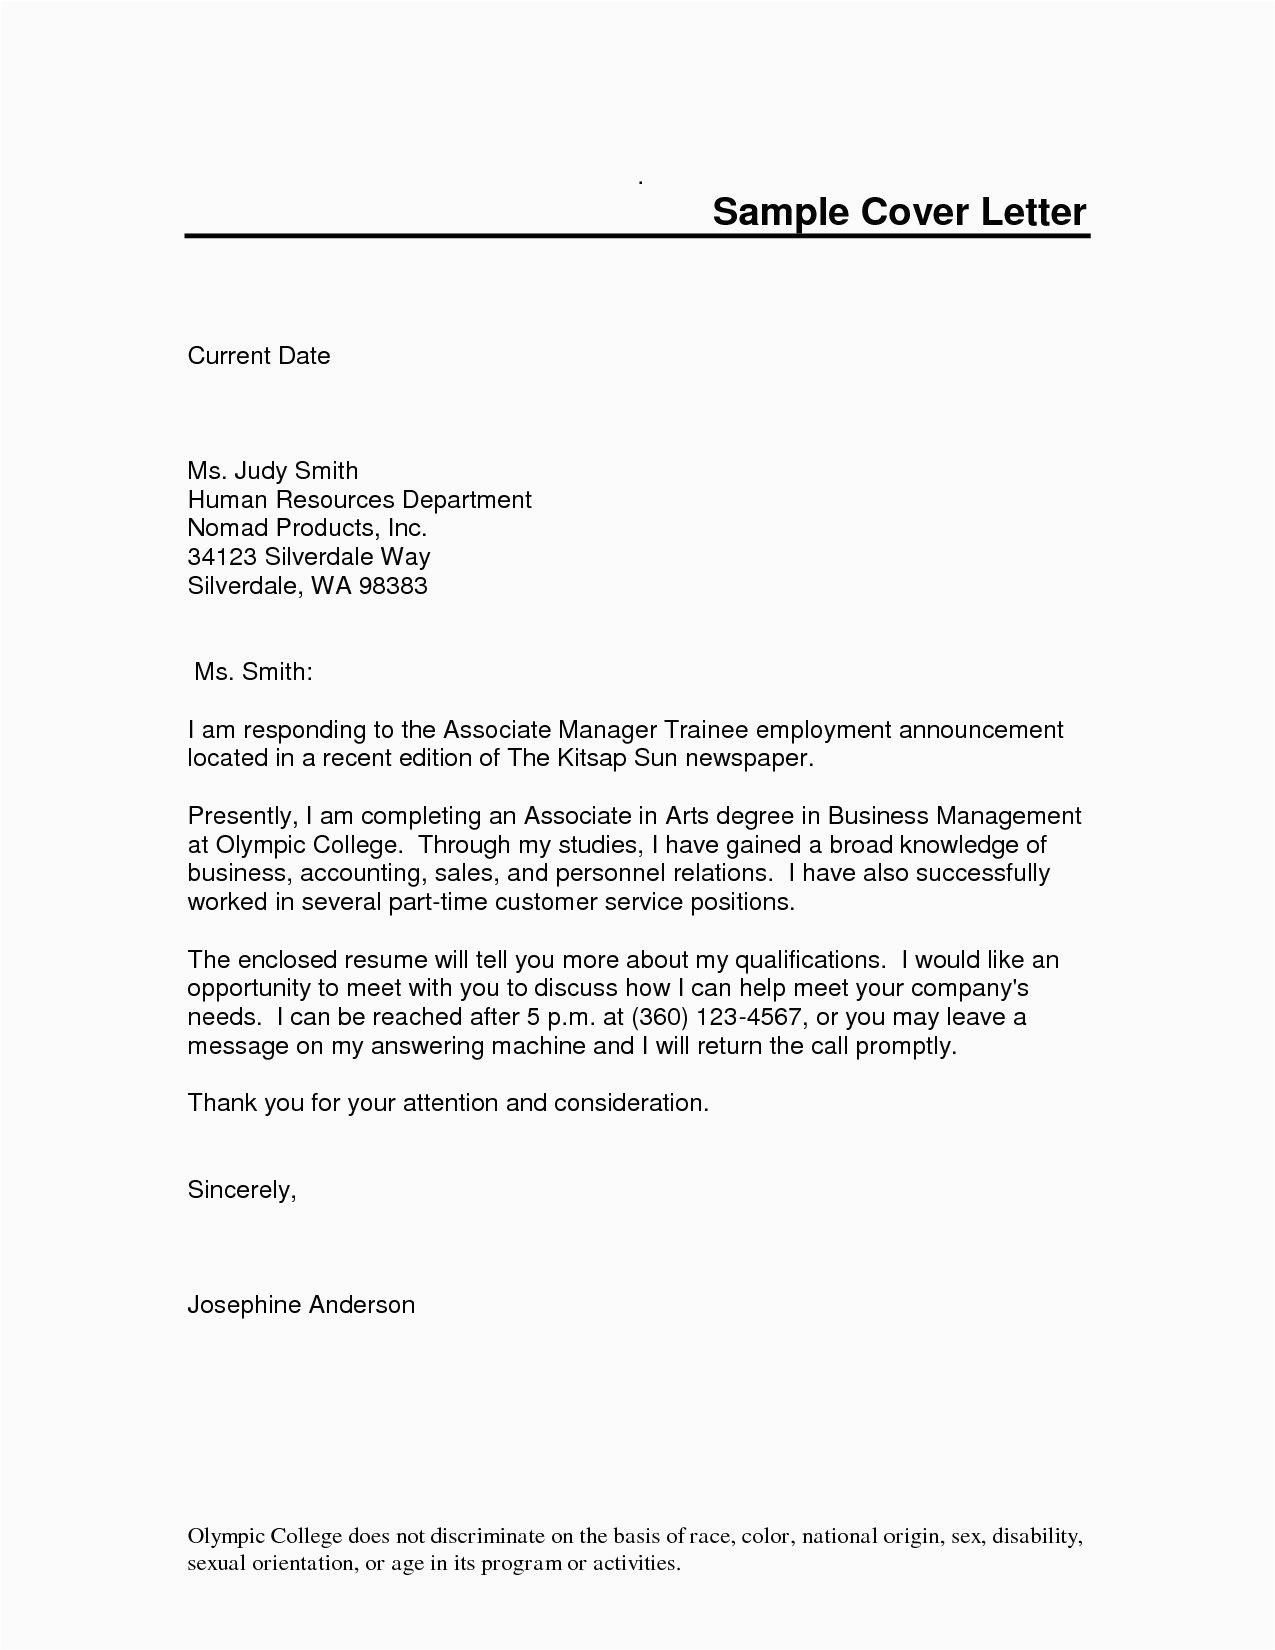 Sample Cover Letter for Resume Microsoft Word Free Cover Letter Template Microsoft Word Whats Cover